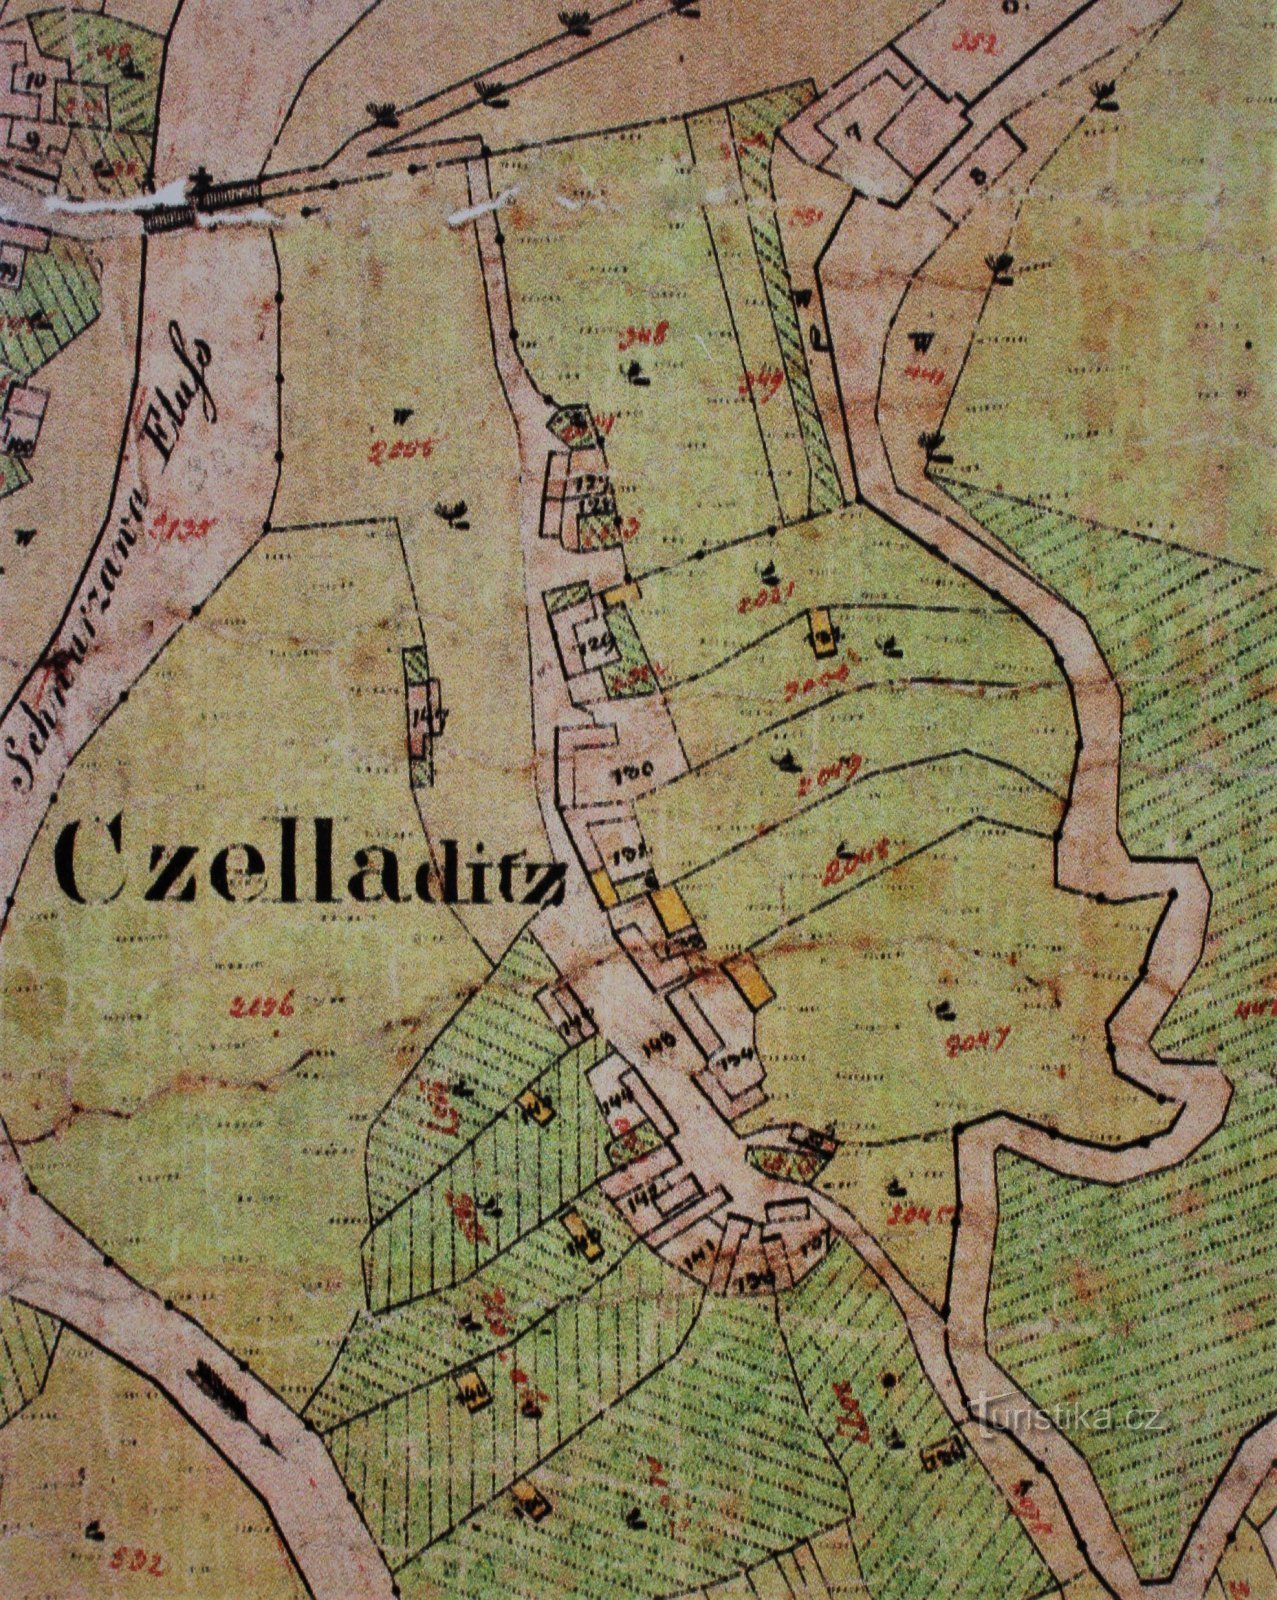 Mapa de Čeladice de 1825 (retirado do quadro de informações)